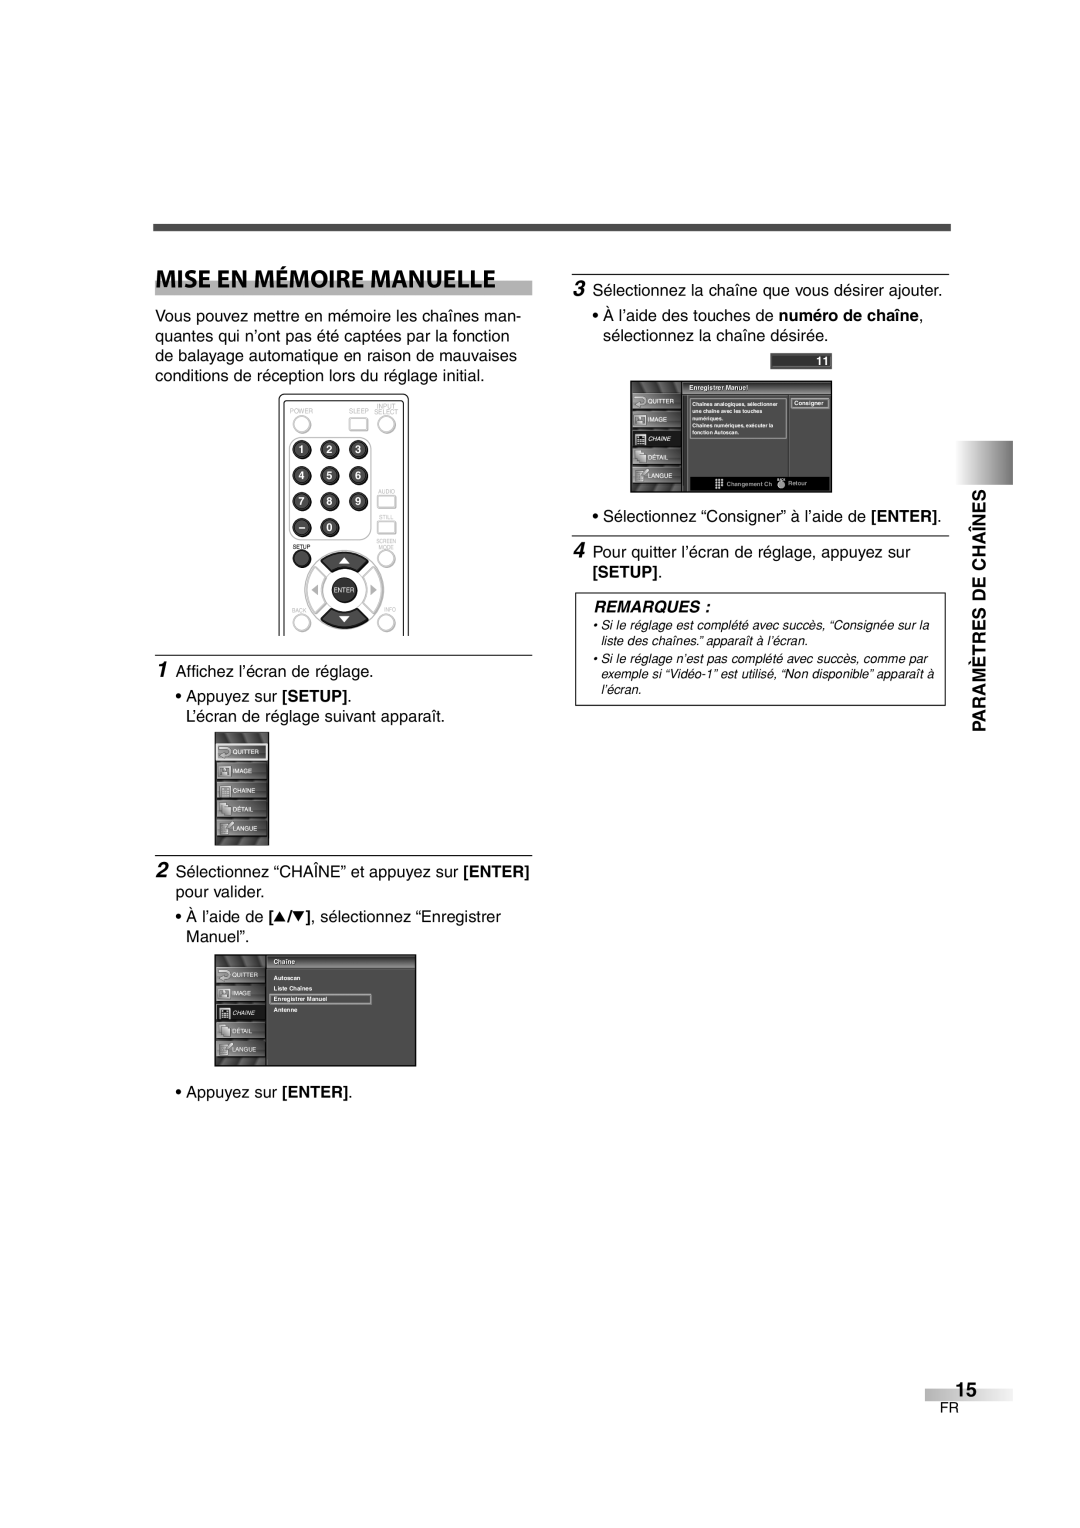 FUNAI CIWL3206 owner manual Mise En Mémoire Manuelle, Paramètres De Chaînes, Remarques 